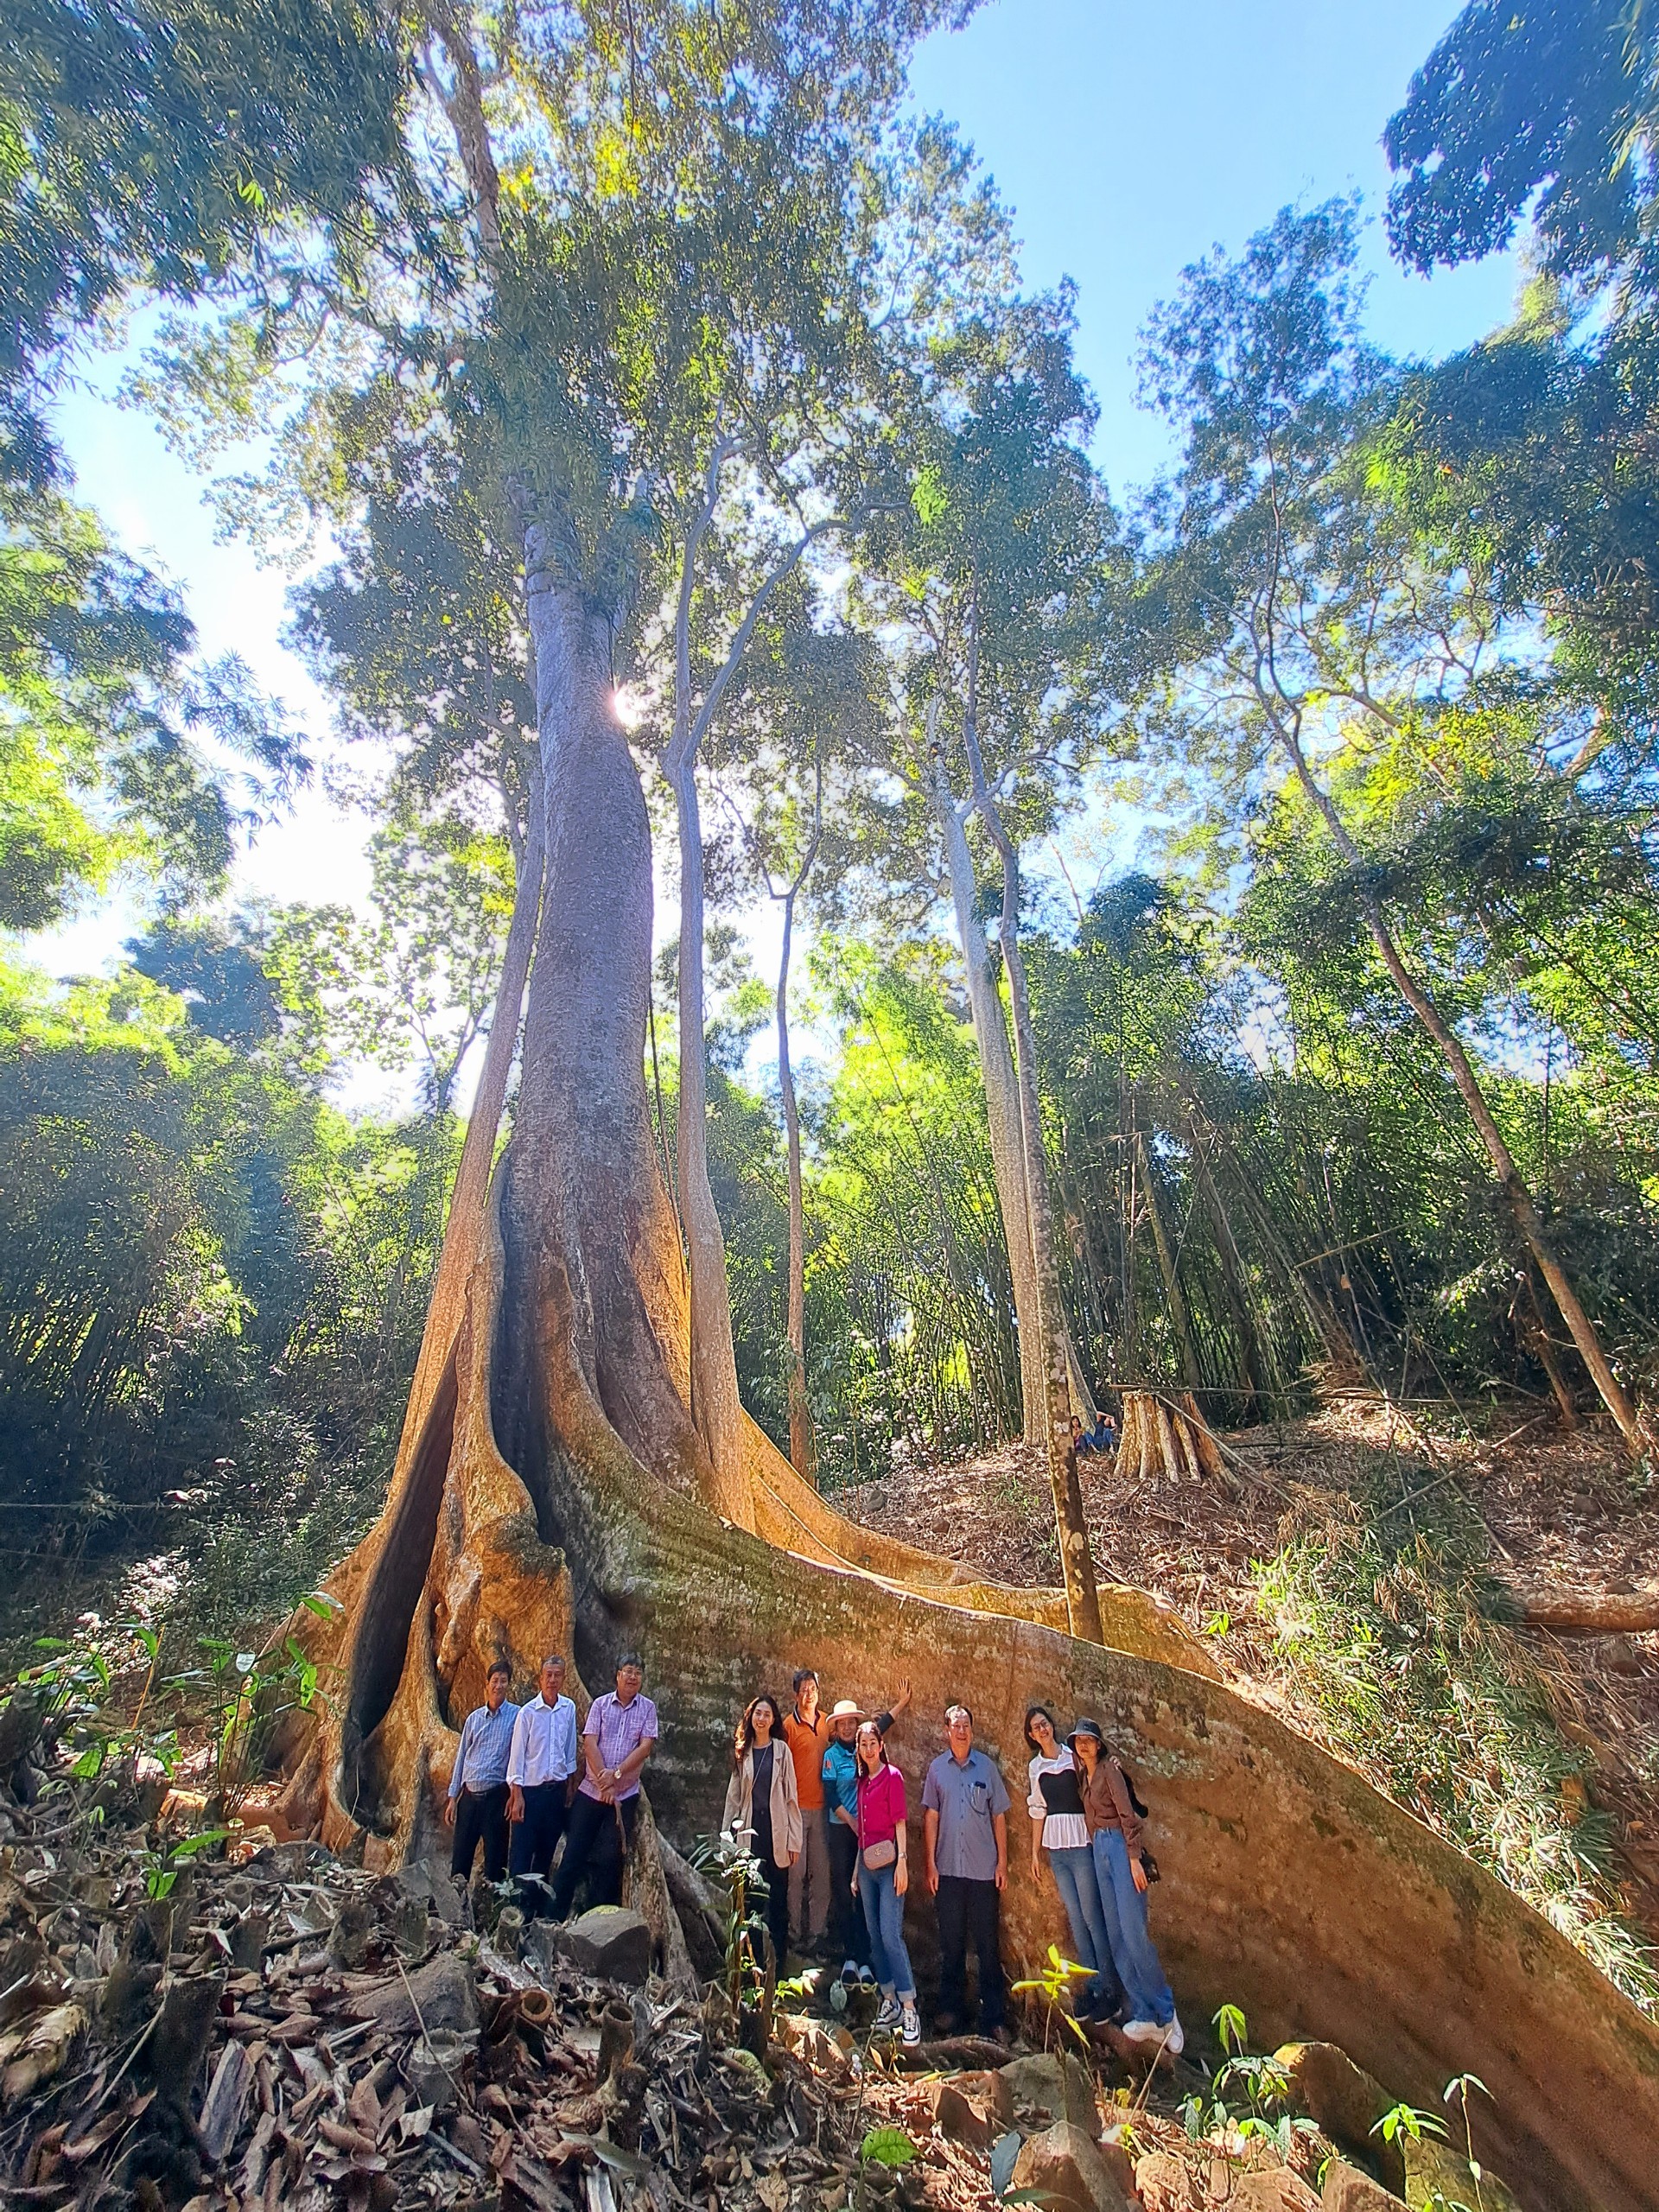 Khám phá sự hùng vĩ của cây di sản ở Vườn Quốc gia Bù Gia Mập |Bình Phước đất và người ||BPTV